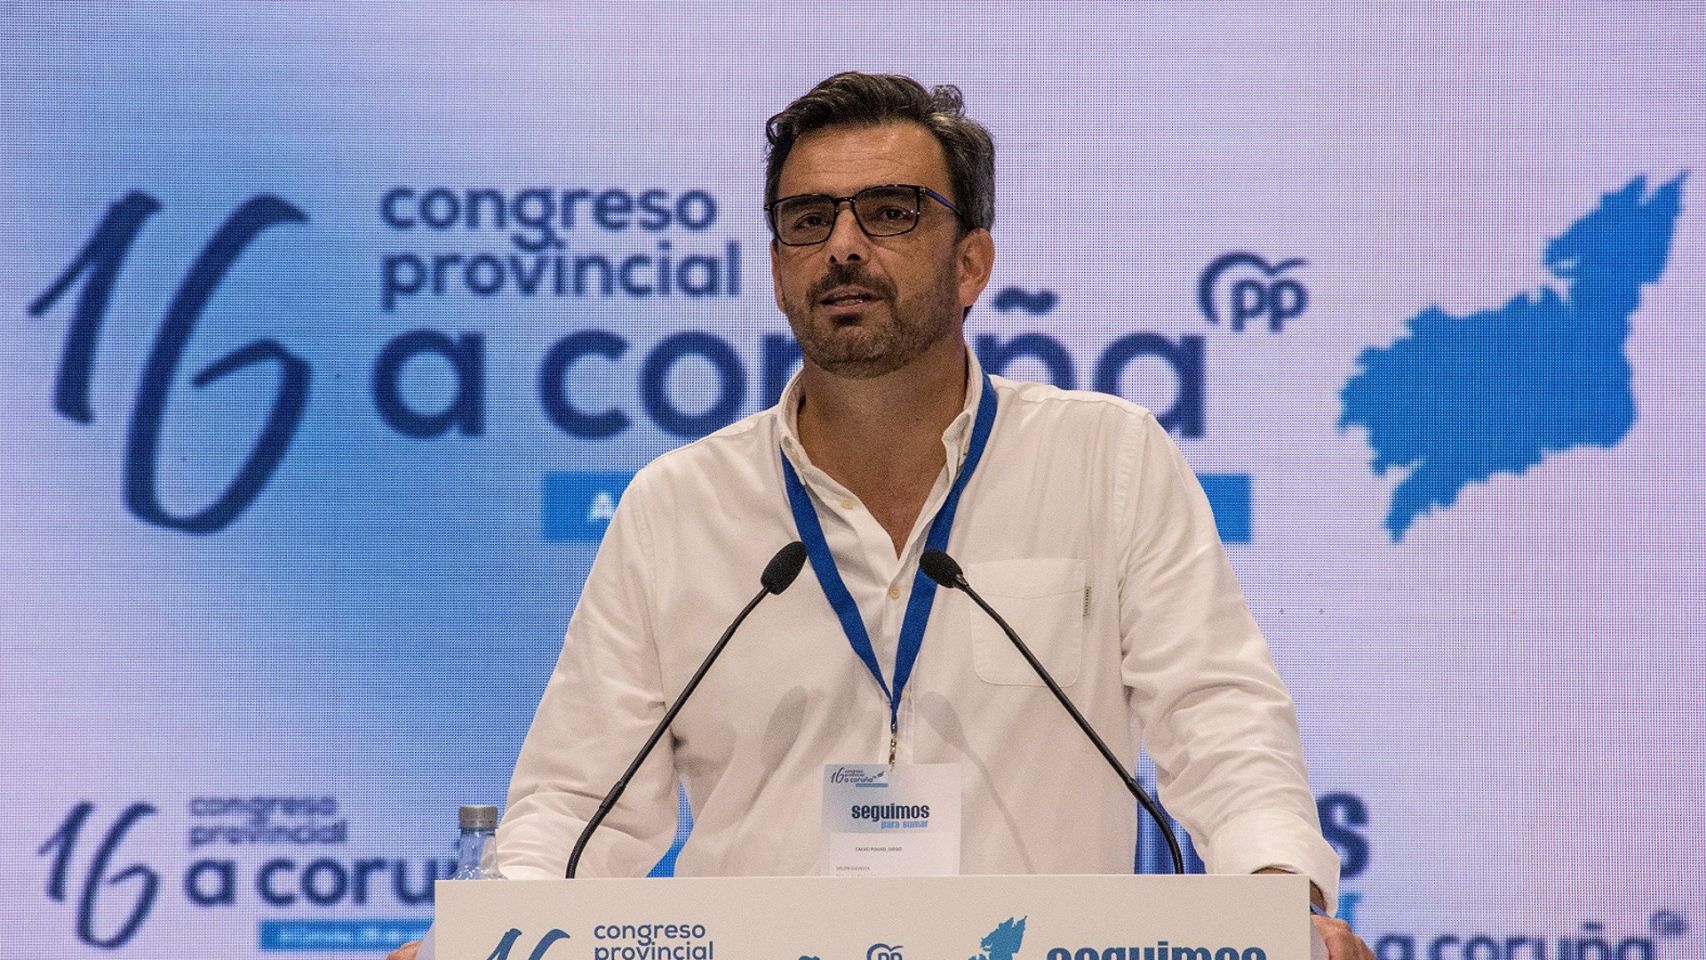 El presidente del Partido Popular de A Coruña, Diego Calvo.